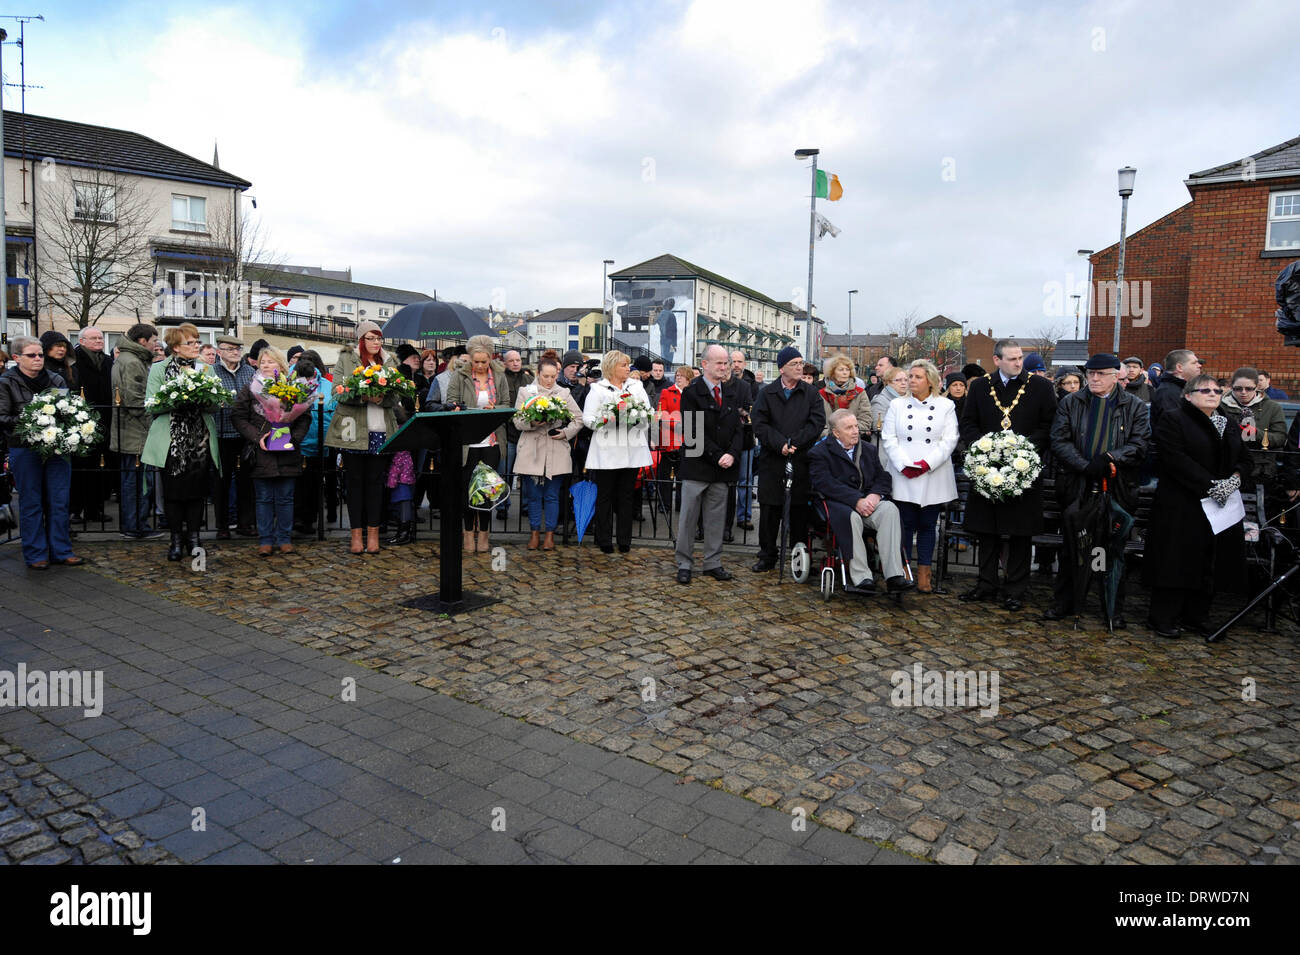 Derry, Londonderry, Irlanda del Nord, Regno Unito, 2 Feb 2014 - domenica sanguinante marzo per la giustizia. Migliaia di persone, comprese le famiglie e i parenti e i sostenitori di raccogliere in Derry per ripercorrere il percorso dei diritti civili marzo il 30 gennaio 1972 quando 13 civili sono stati sparato e ucciso da British paracadutisti, in quello che è diventato noto come Bloody Sunday. Credito: George Sweeney/Alamy Live News Foto Stock